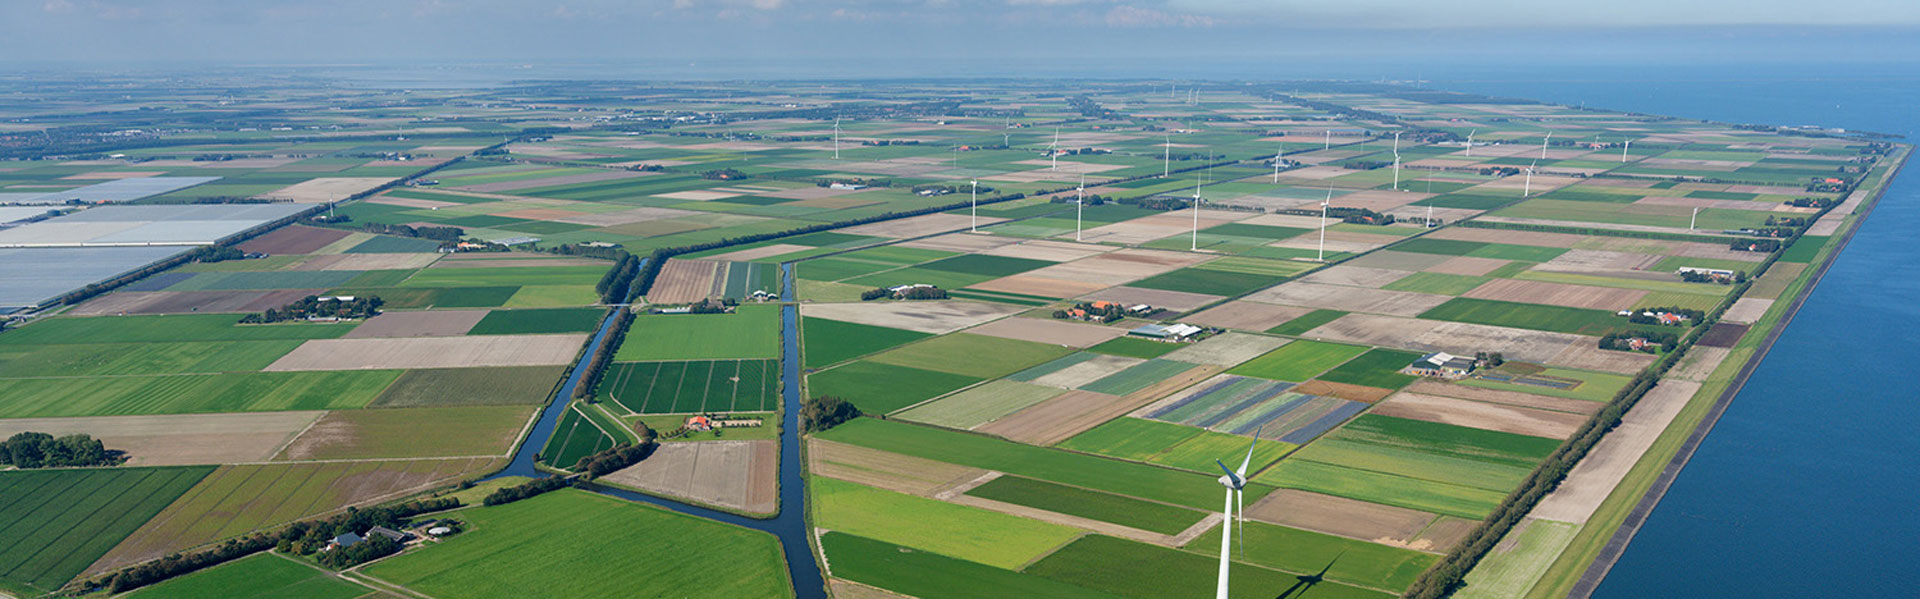 Wieringermeer wind park, outside Amsterdam, Netherlands